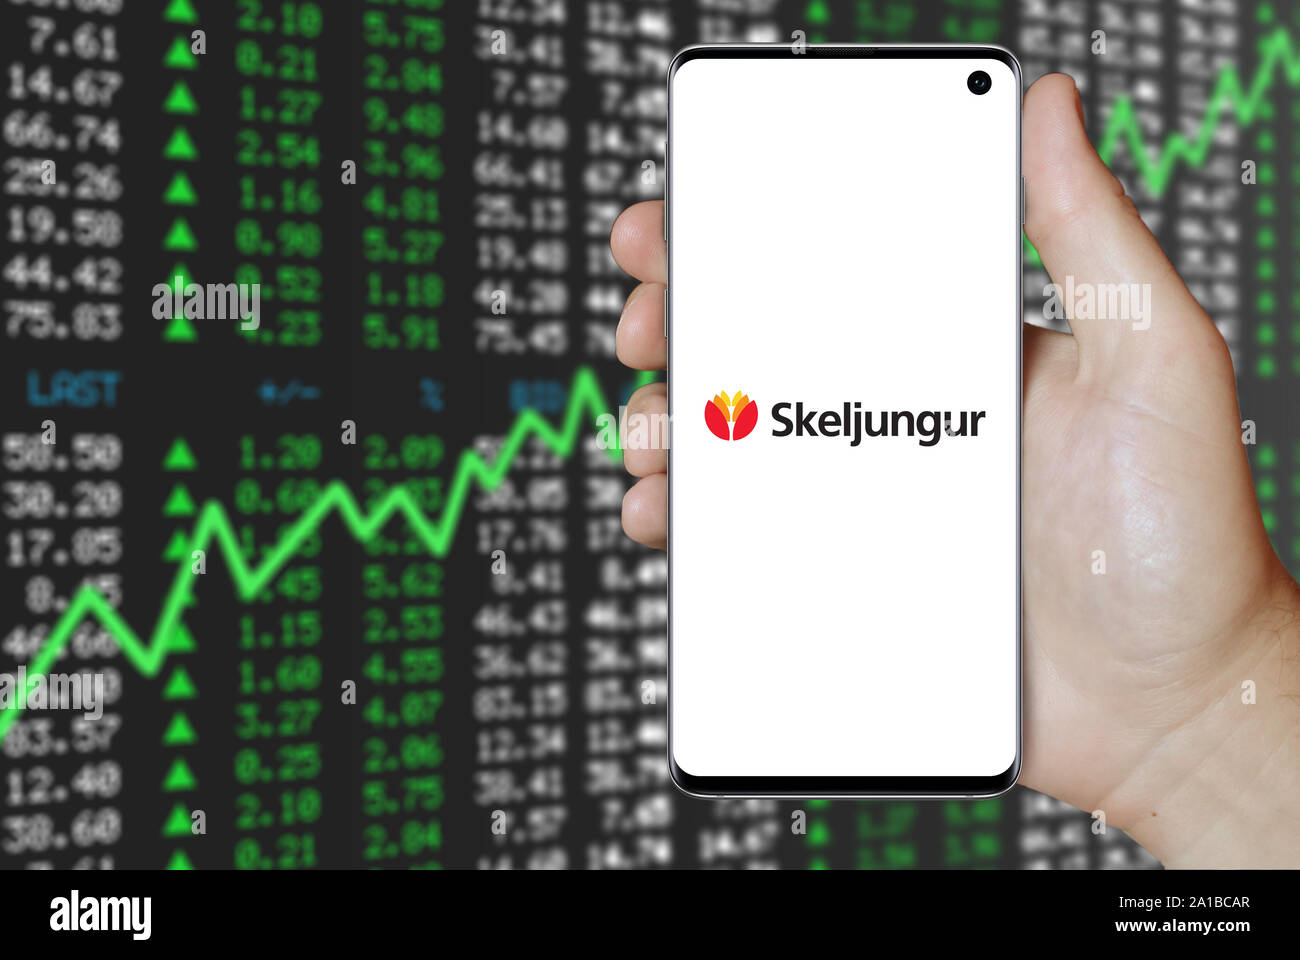 Un uomo possiede uno smartphone visualizzando il logo della società Skeljungur quotata al Nasdaq Islanda. Positivo del mercato azionario sfondo. Credito: PIXDUCE Foto Stock